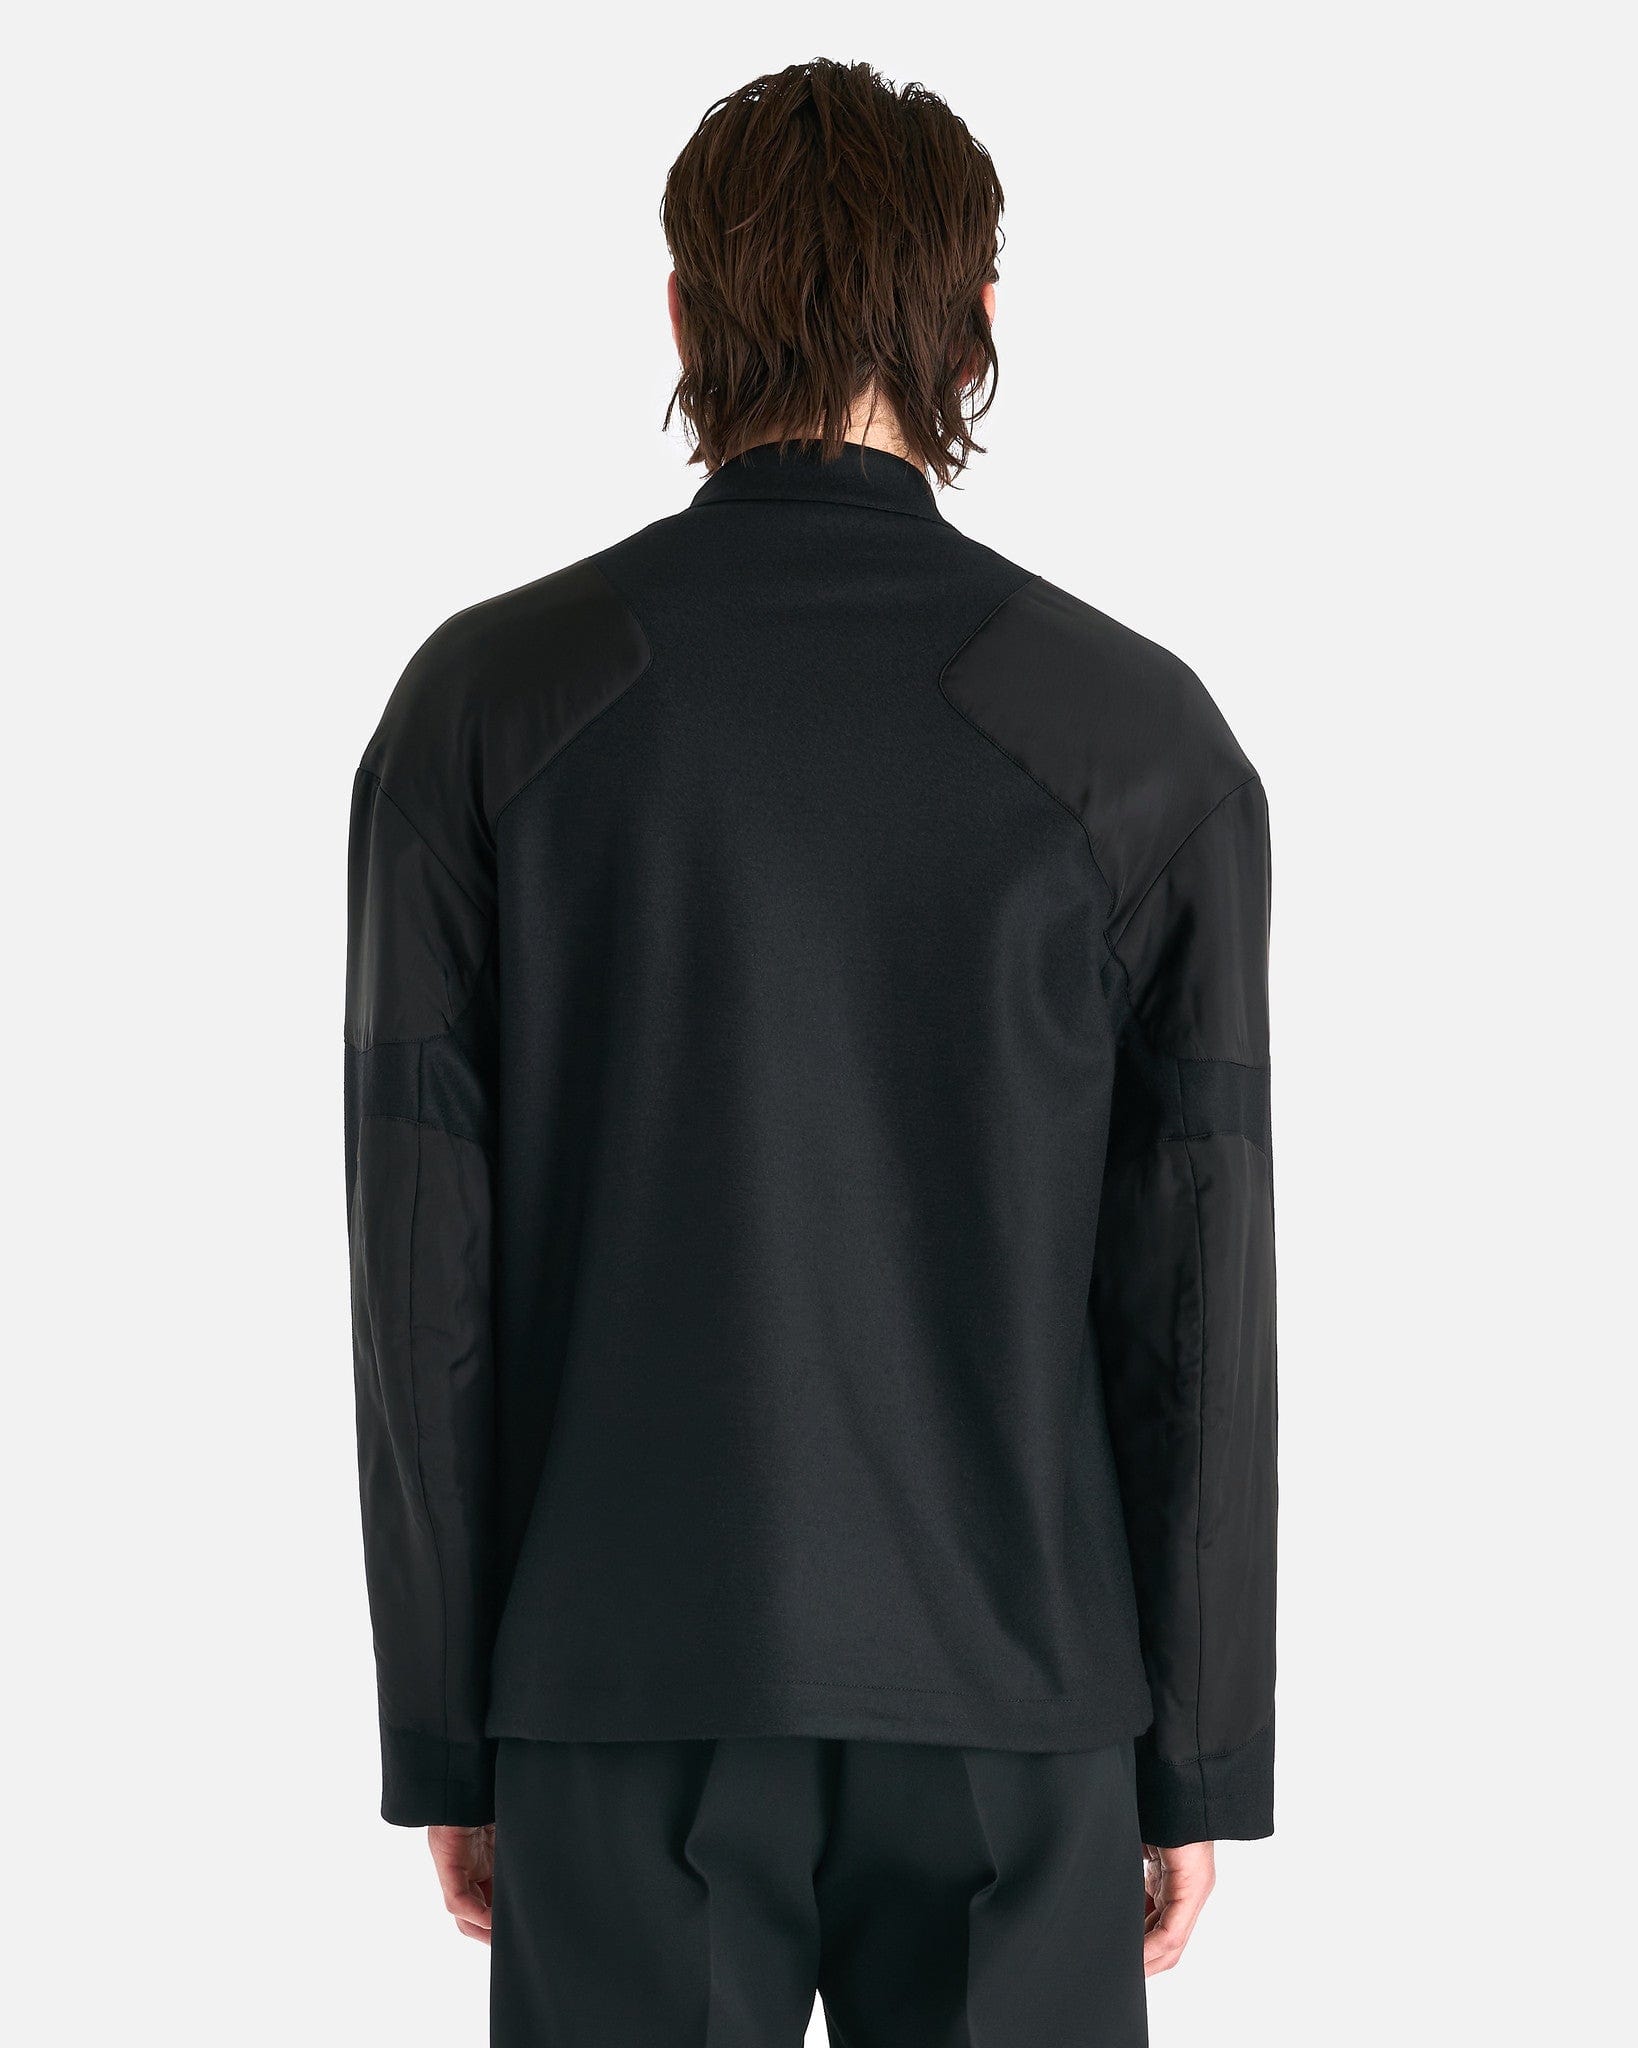 Jil Sander Men's Coat Full-Zip Wool Melton Jacket in Black